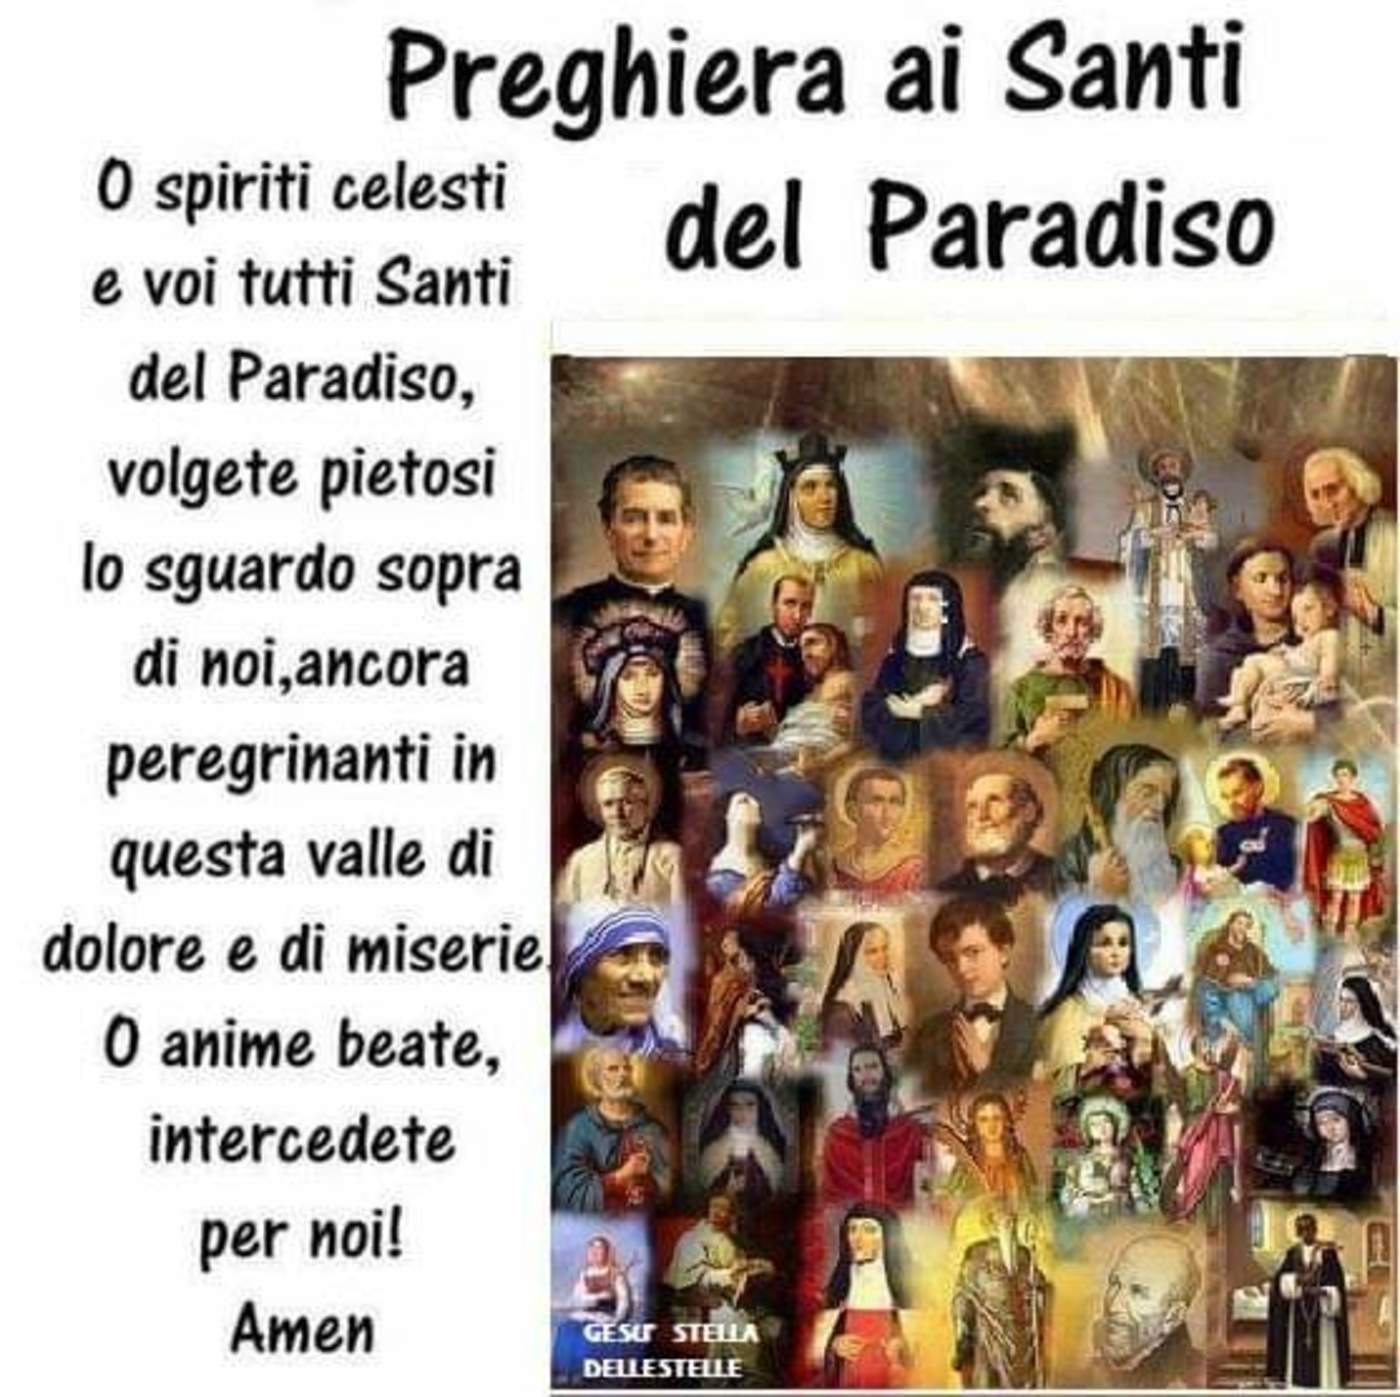 Preghiera ai Santi del paradiso